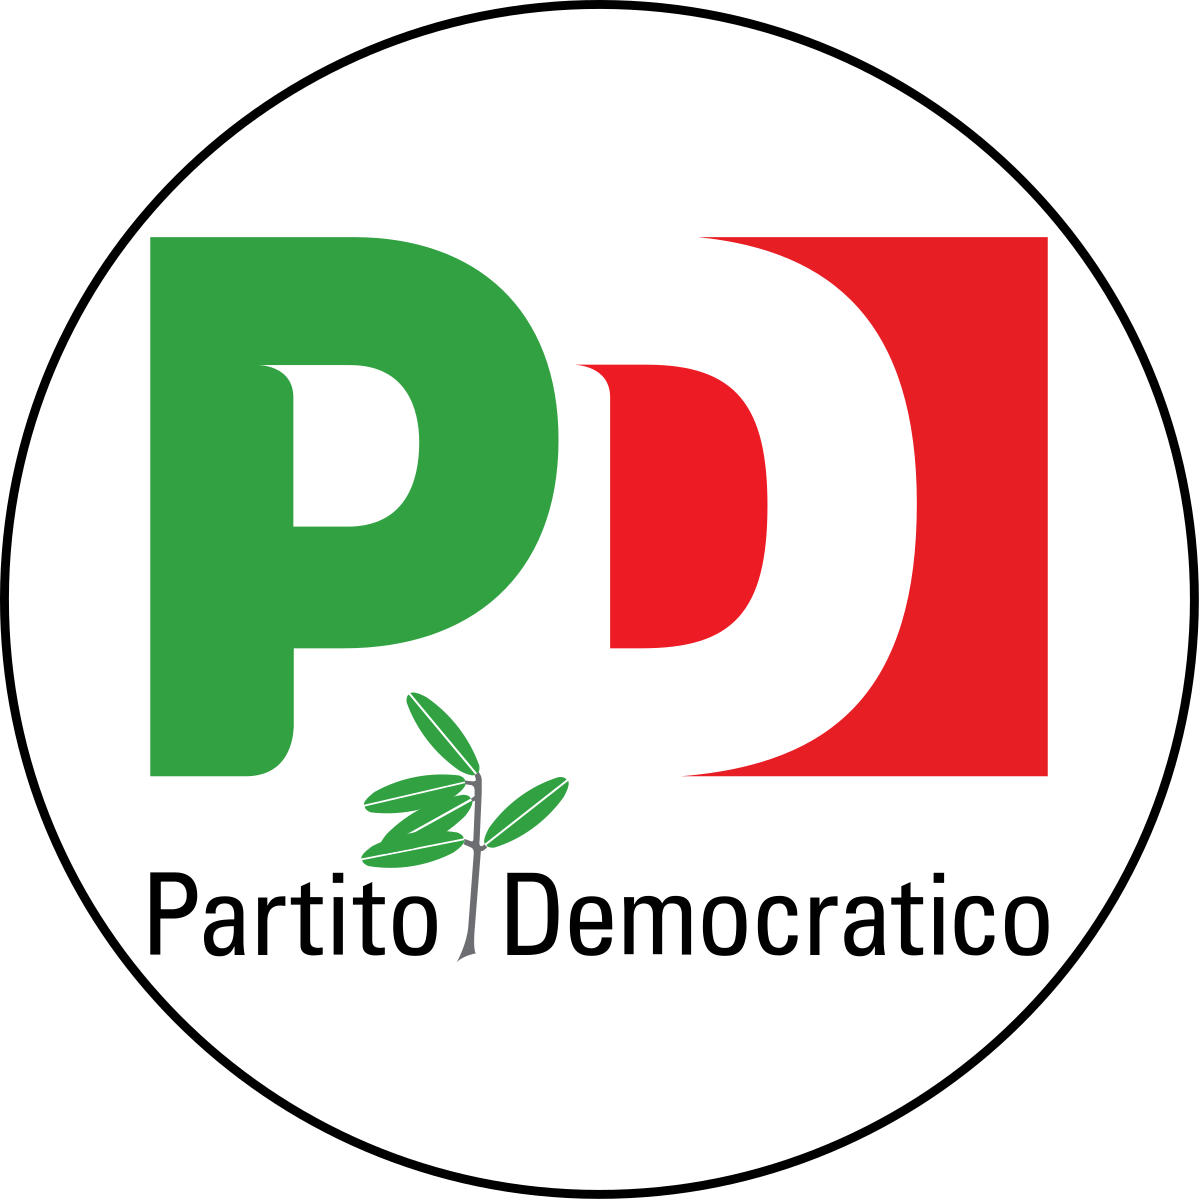 pd-partito-democratico-simbolo